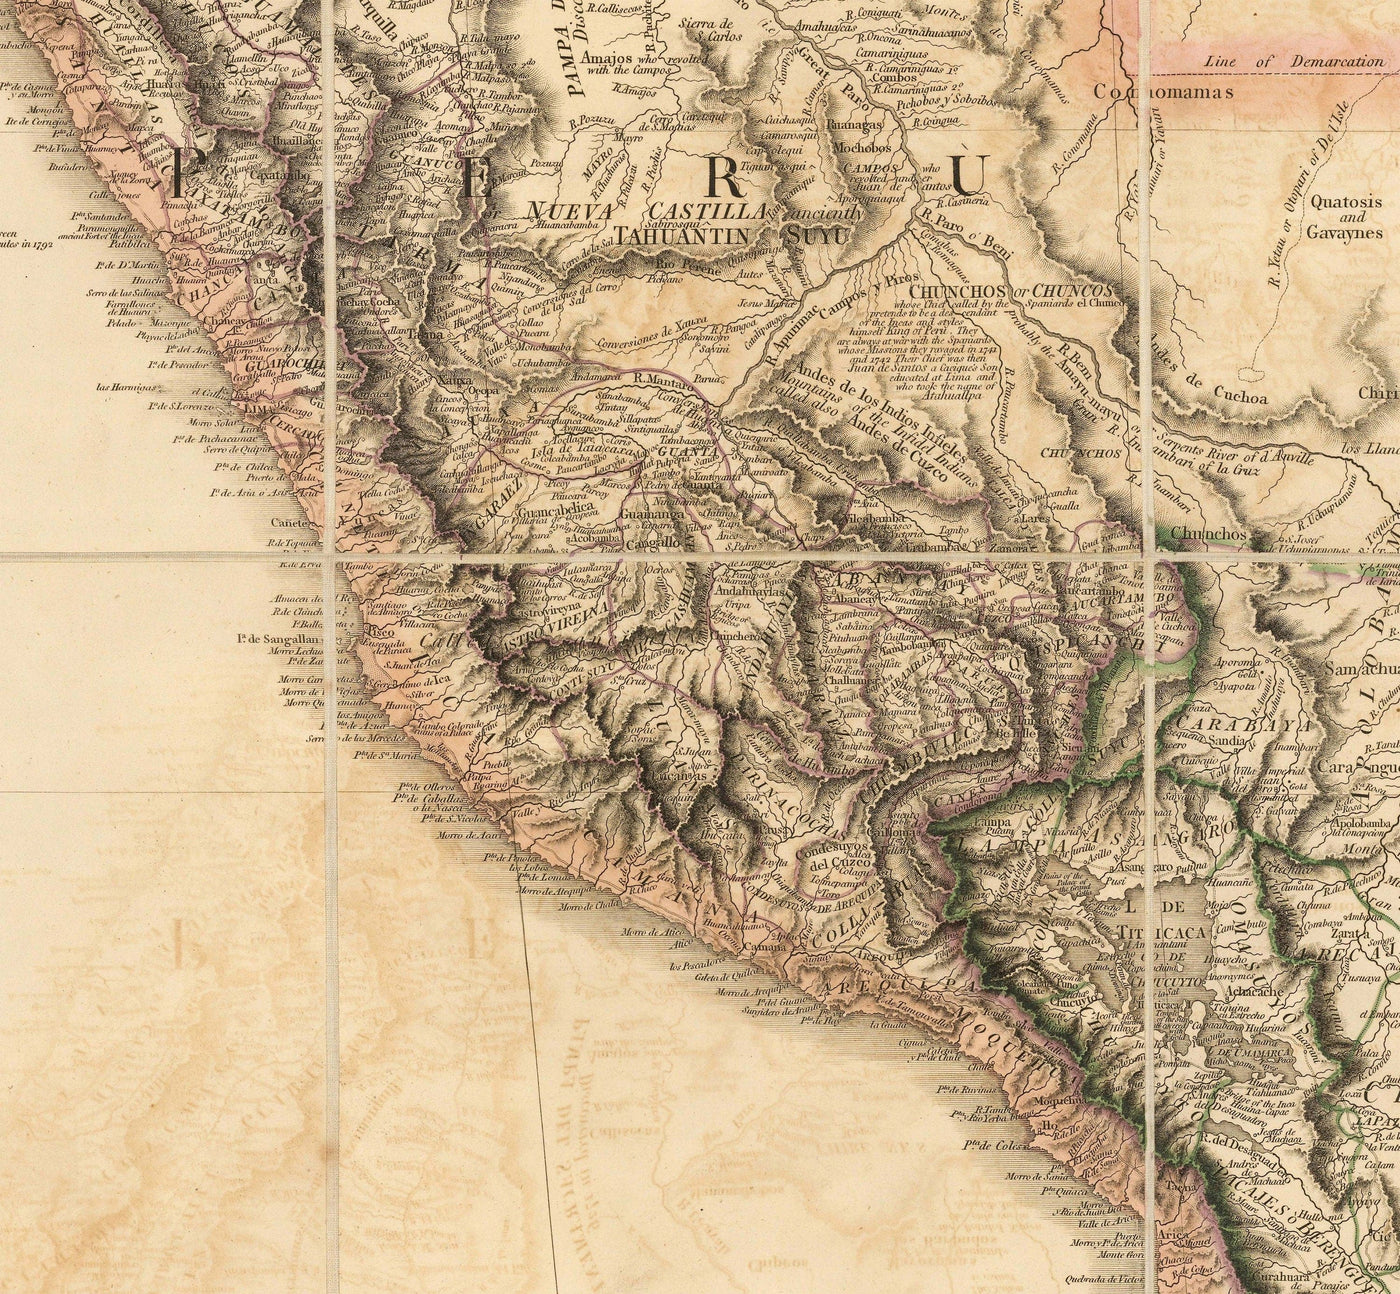 Rare ancienne carte d'Amérique du Sud de Faden, 1807 - Colonialisme espagnol - Brésil, Pérou, Colombie, Chili, Venezuela, Amazon